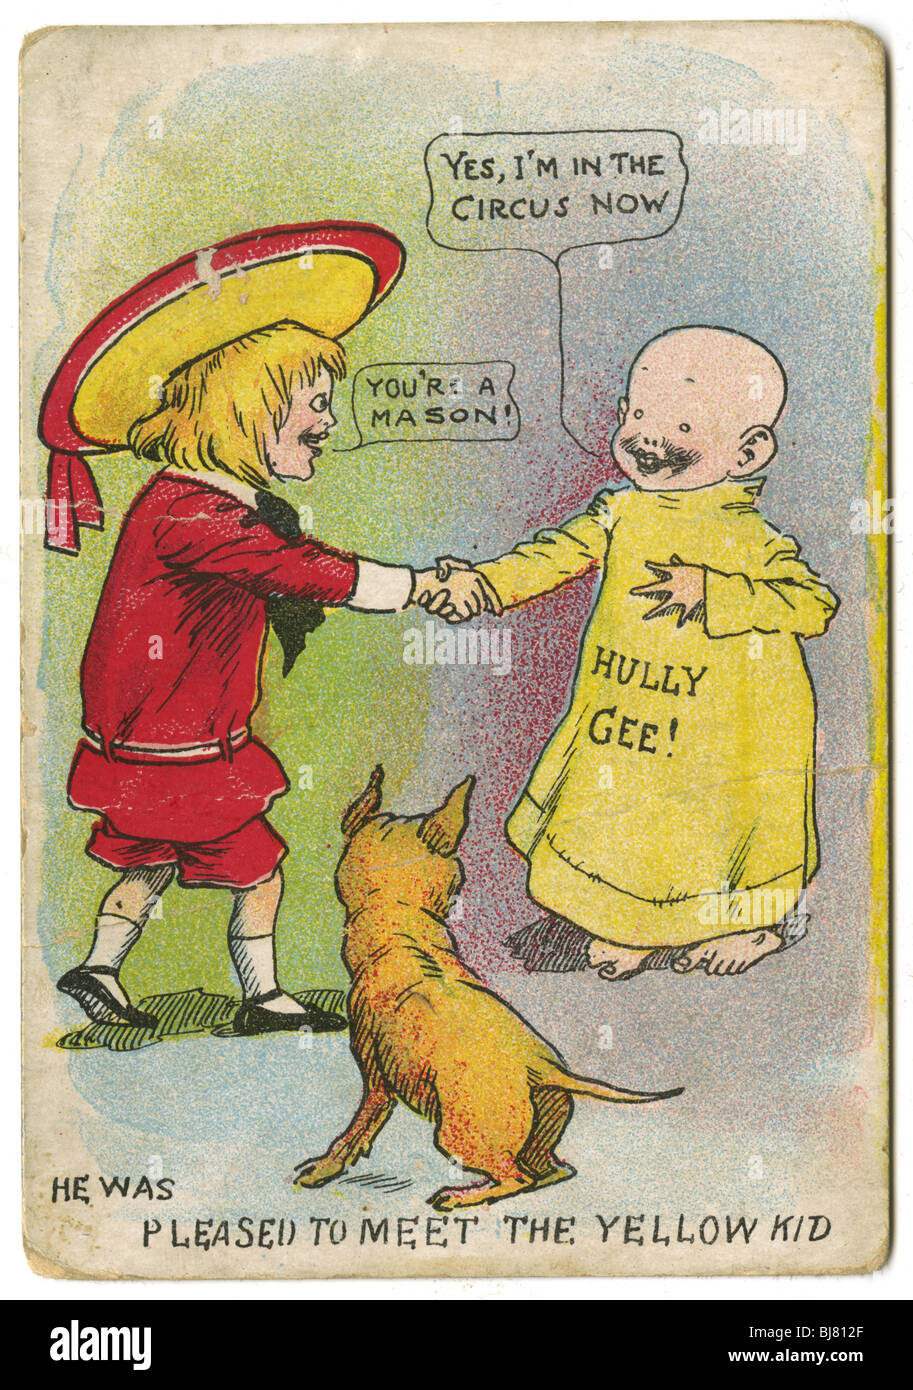 Circa 1904 Buster Brown y el Yellow Kid Trading Card, con Tiger el perro, por R.F. Outcault. Foto de stock